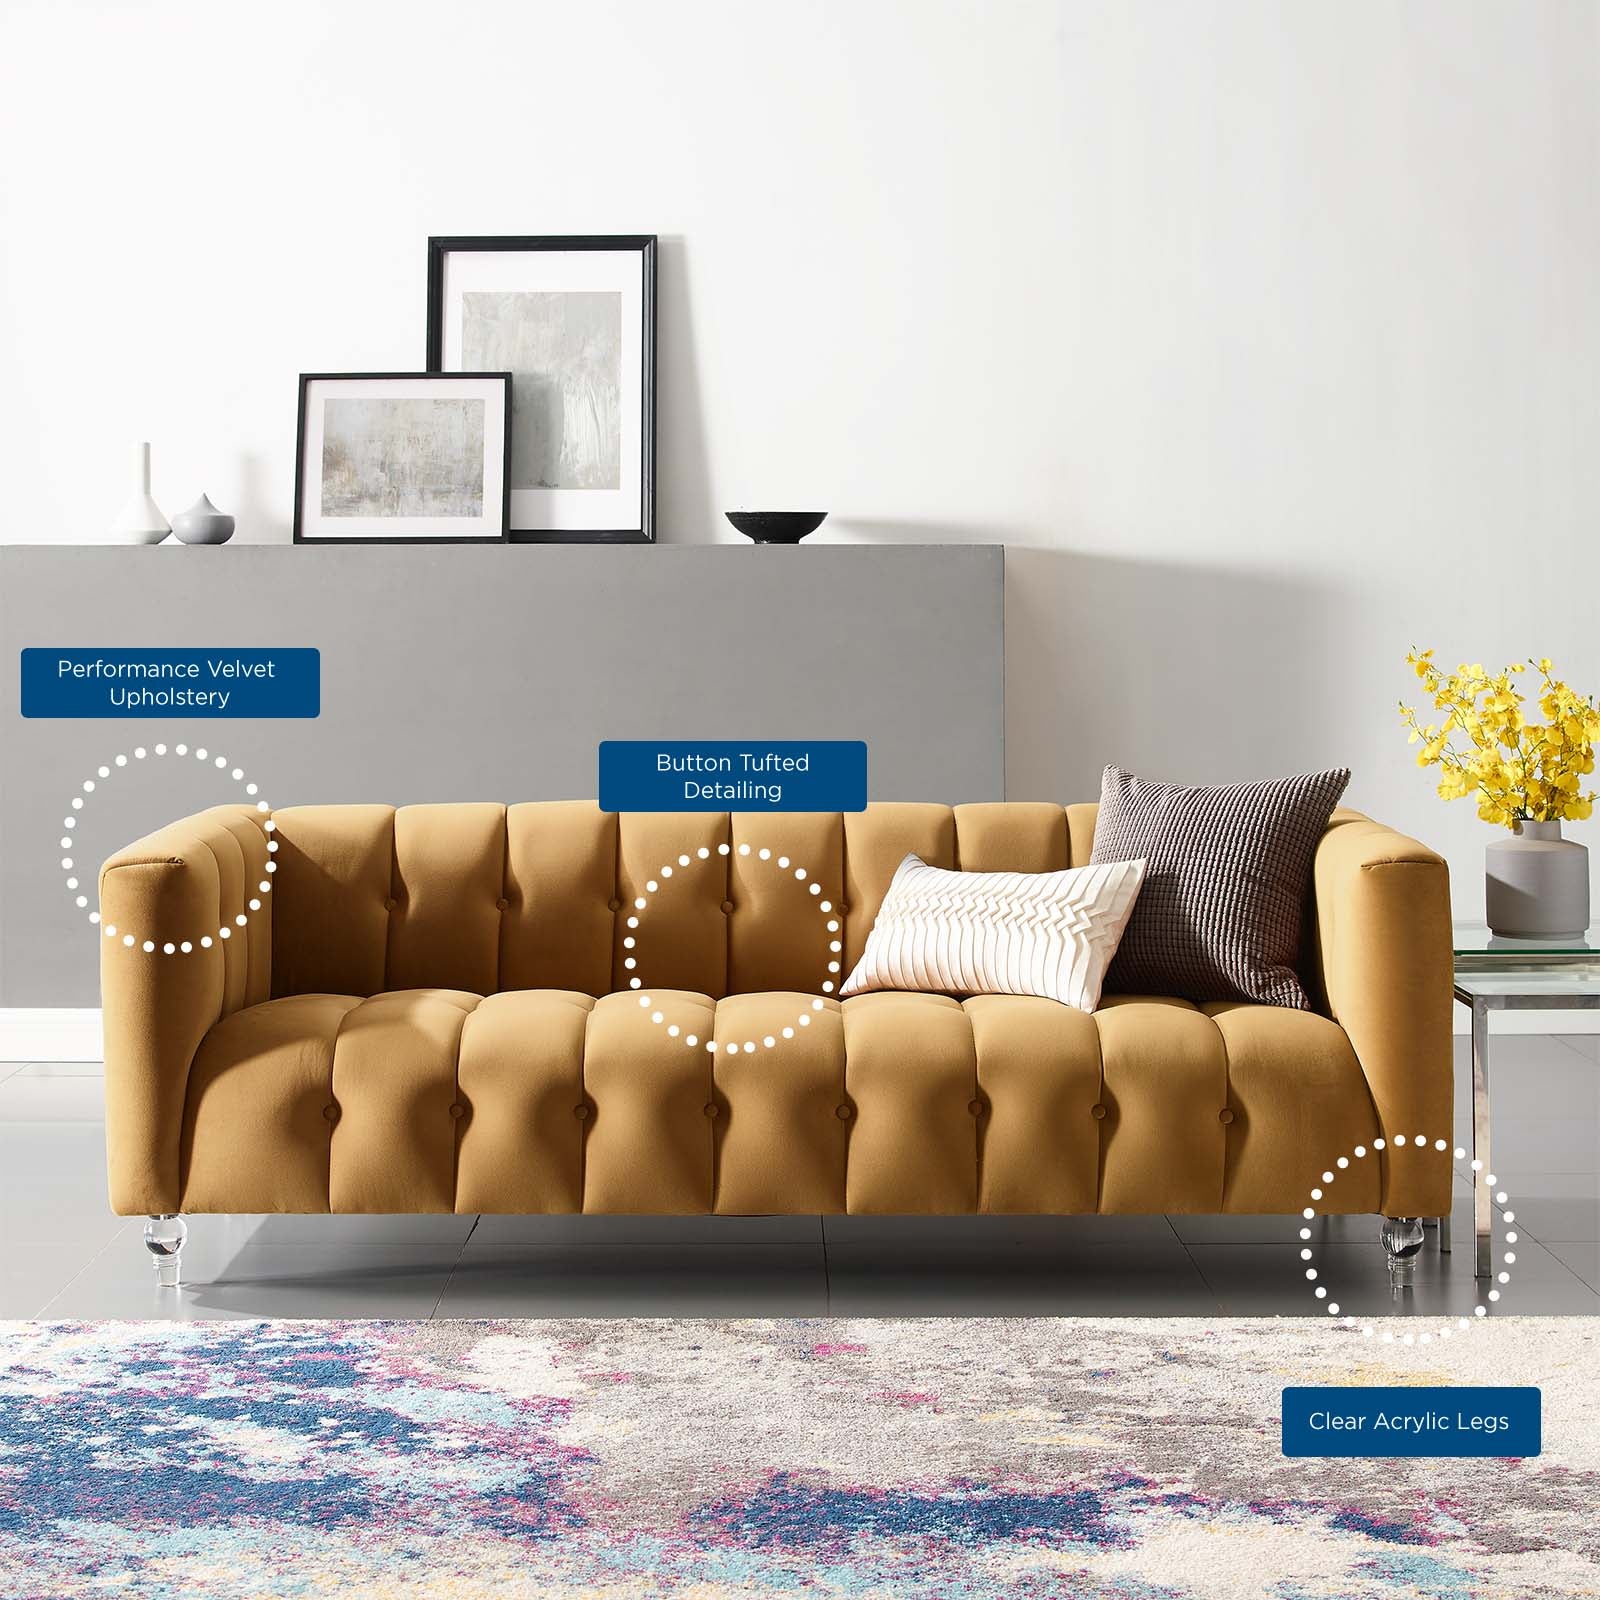 Mesmer Channel Tufted Button Performance Velvet Sofa - East Shore Modern Home Furnishings